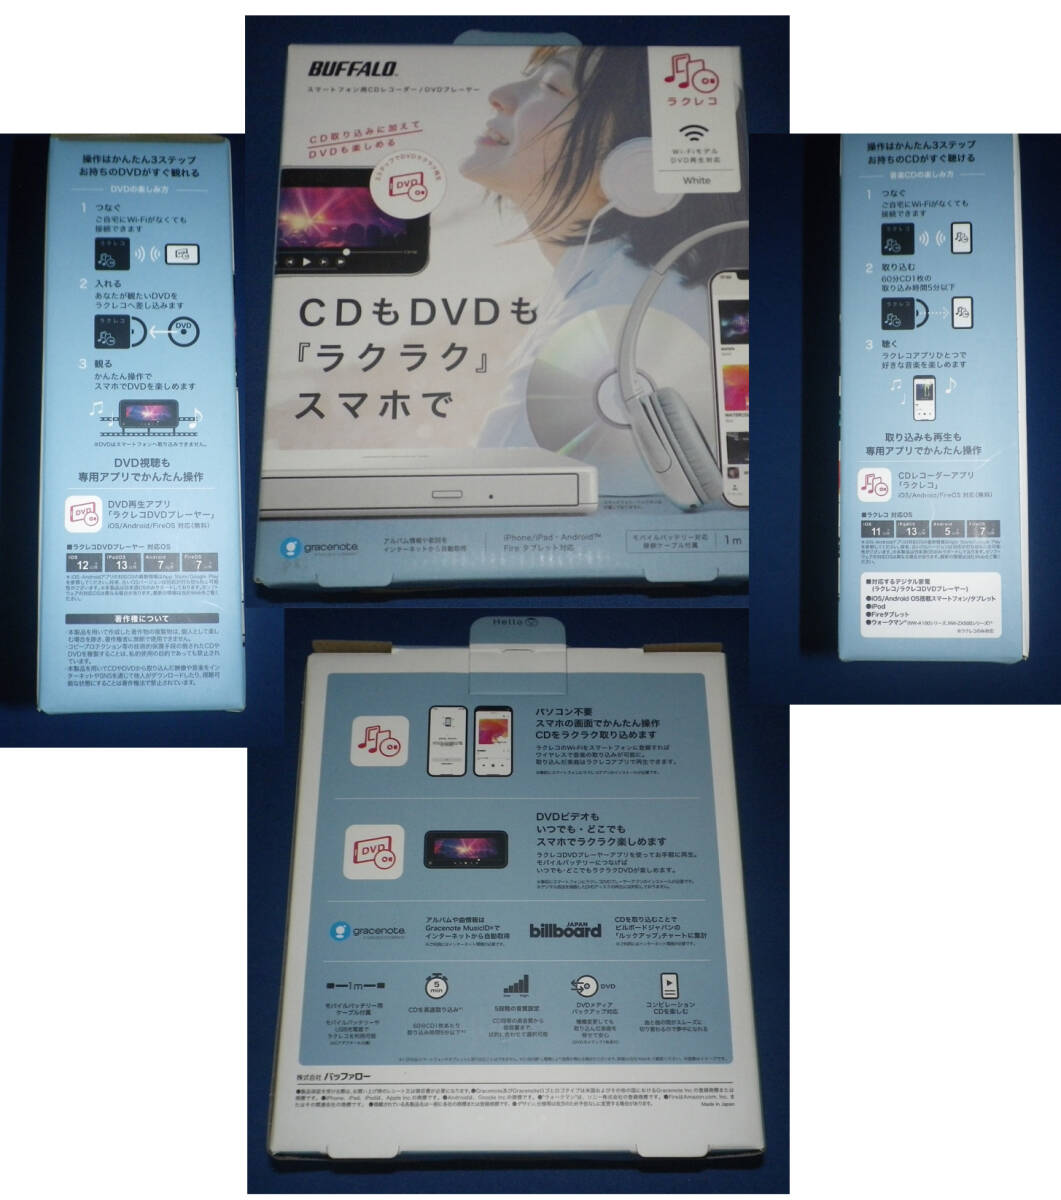  смартфон DVD плеер lakrekoDVD WIFI модель б/у прекрасный товар 